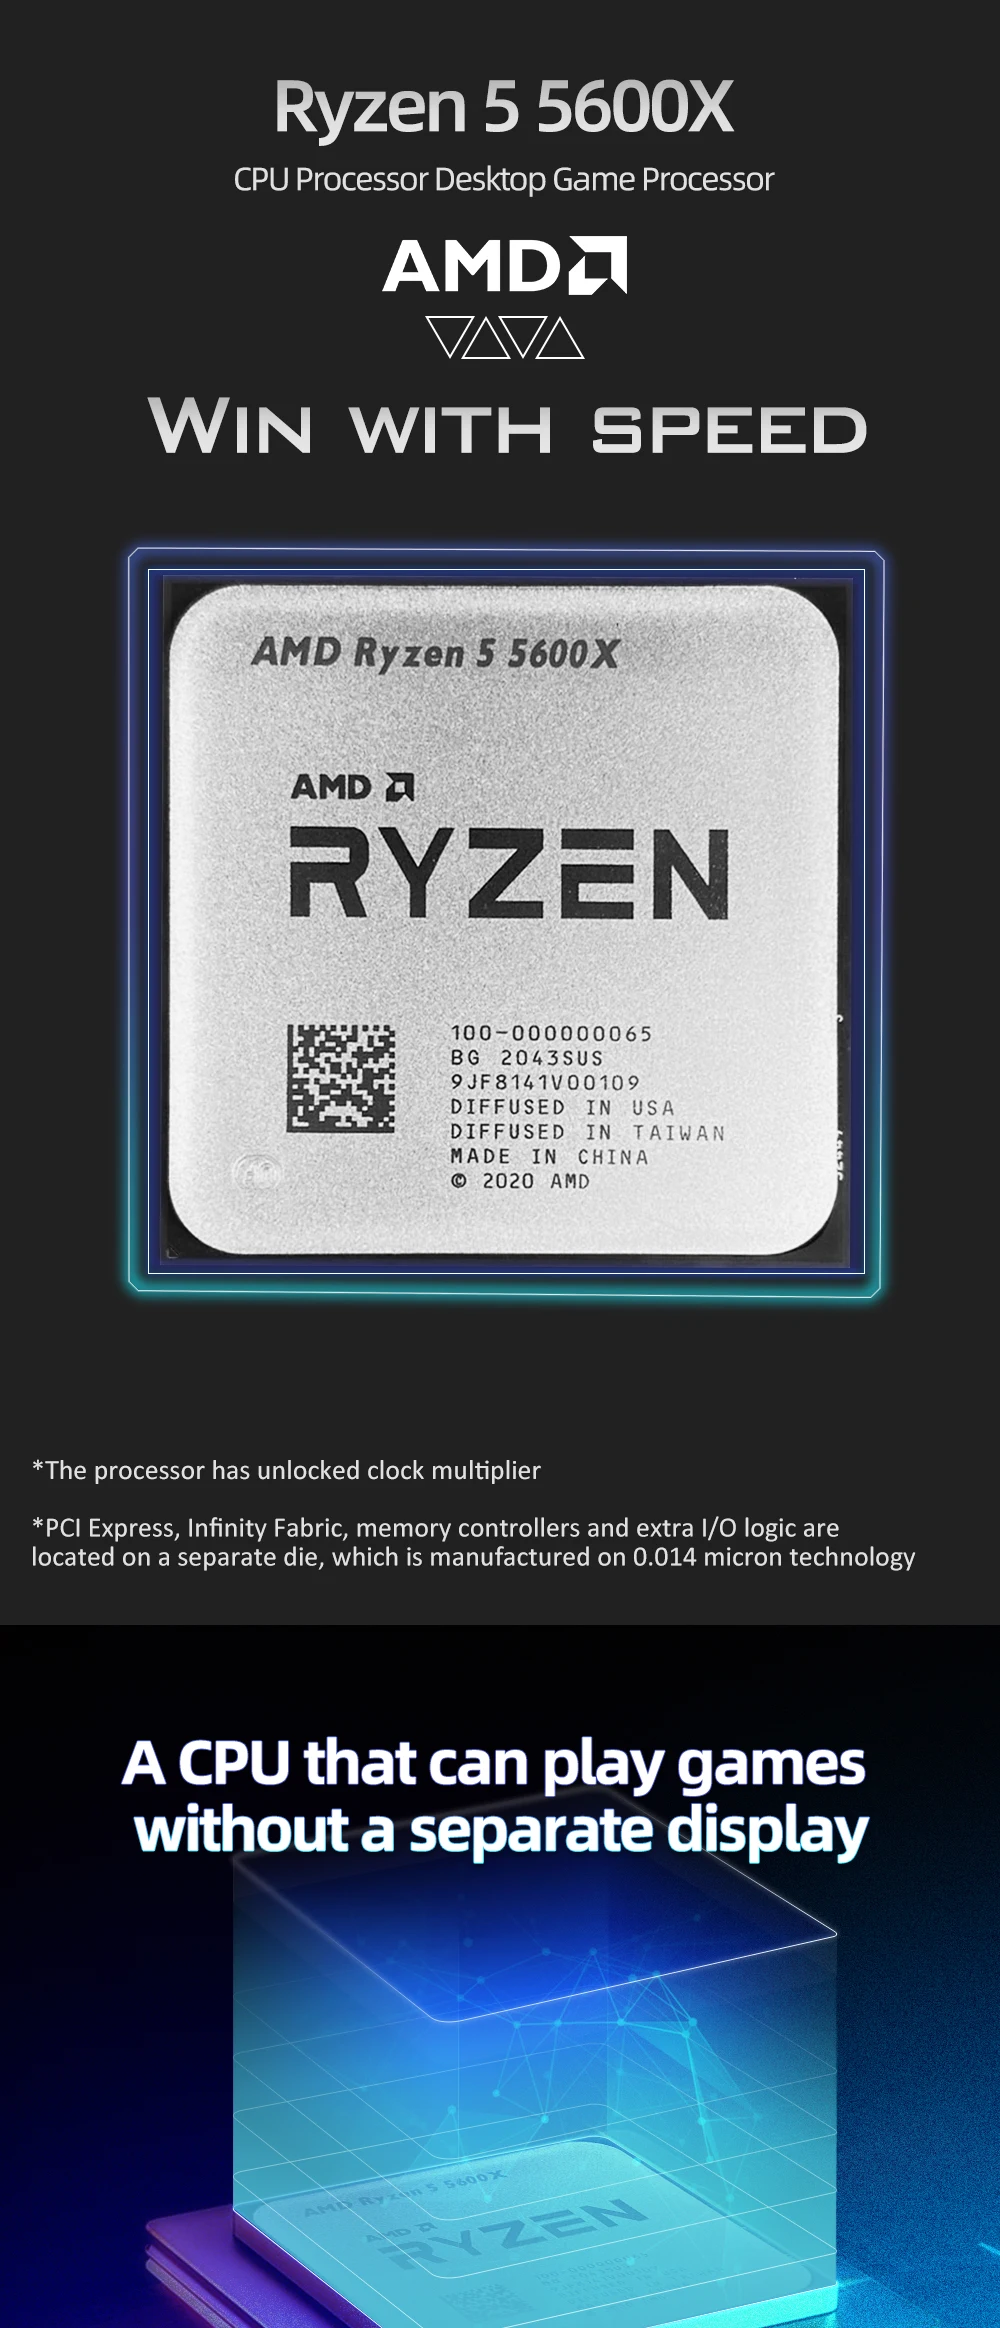 AMD New Ryzen 5 5600X R5 5600X CPU Processor Desktop Gamer Processor 3.7 GHz 6-Core 12-Thread 7NM 100-000000065 AM4 Accessories most powerful cpu